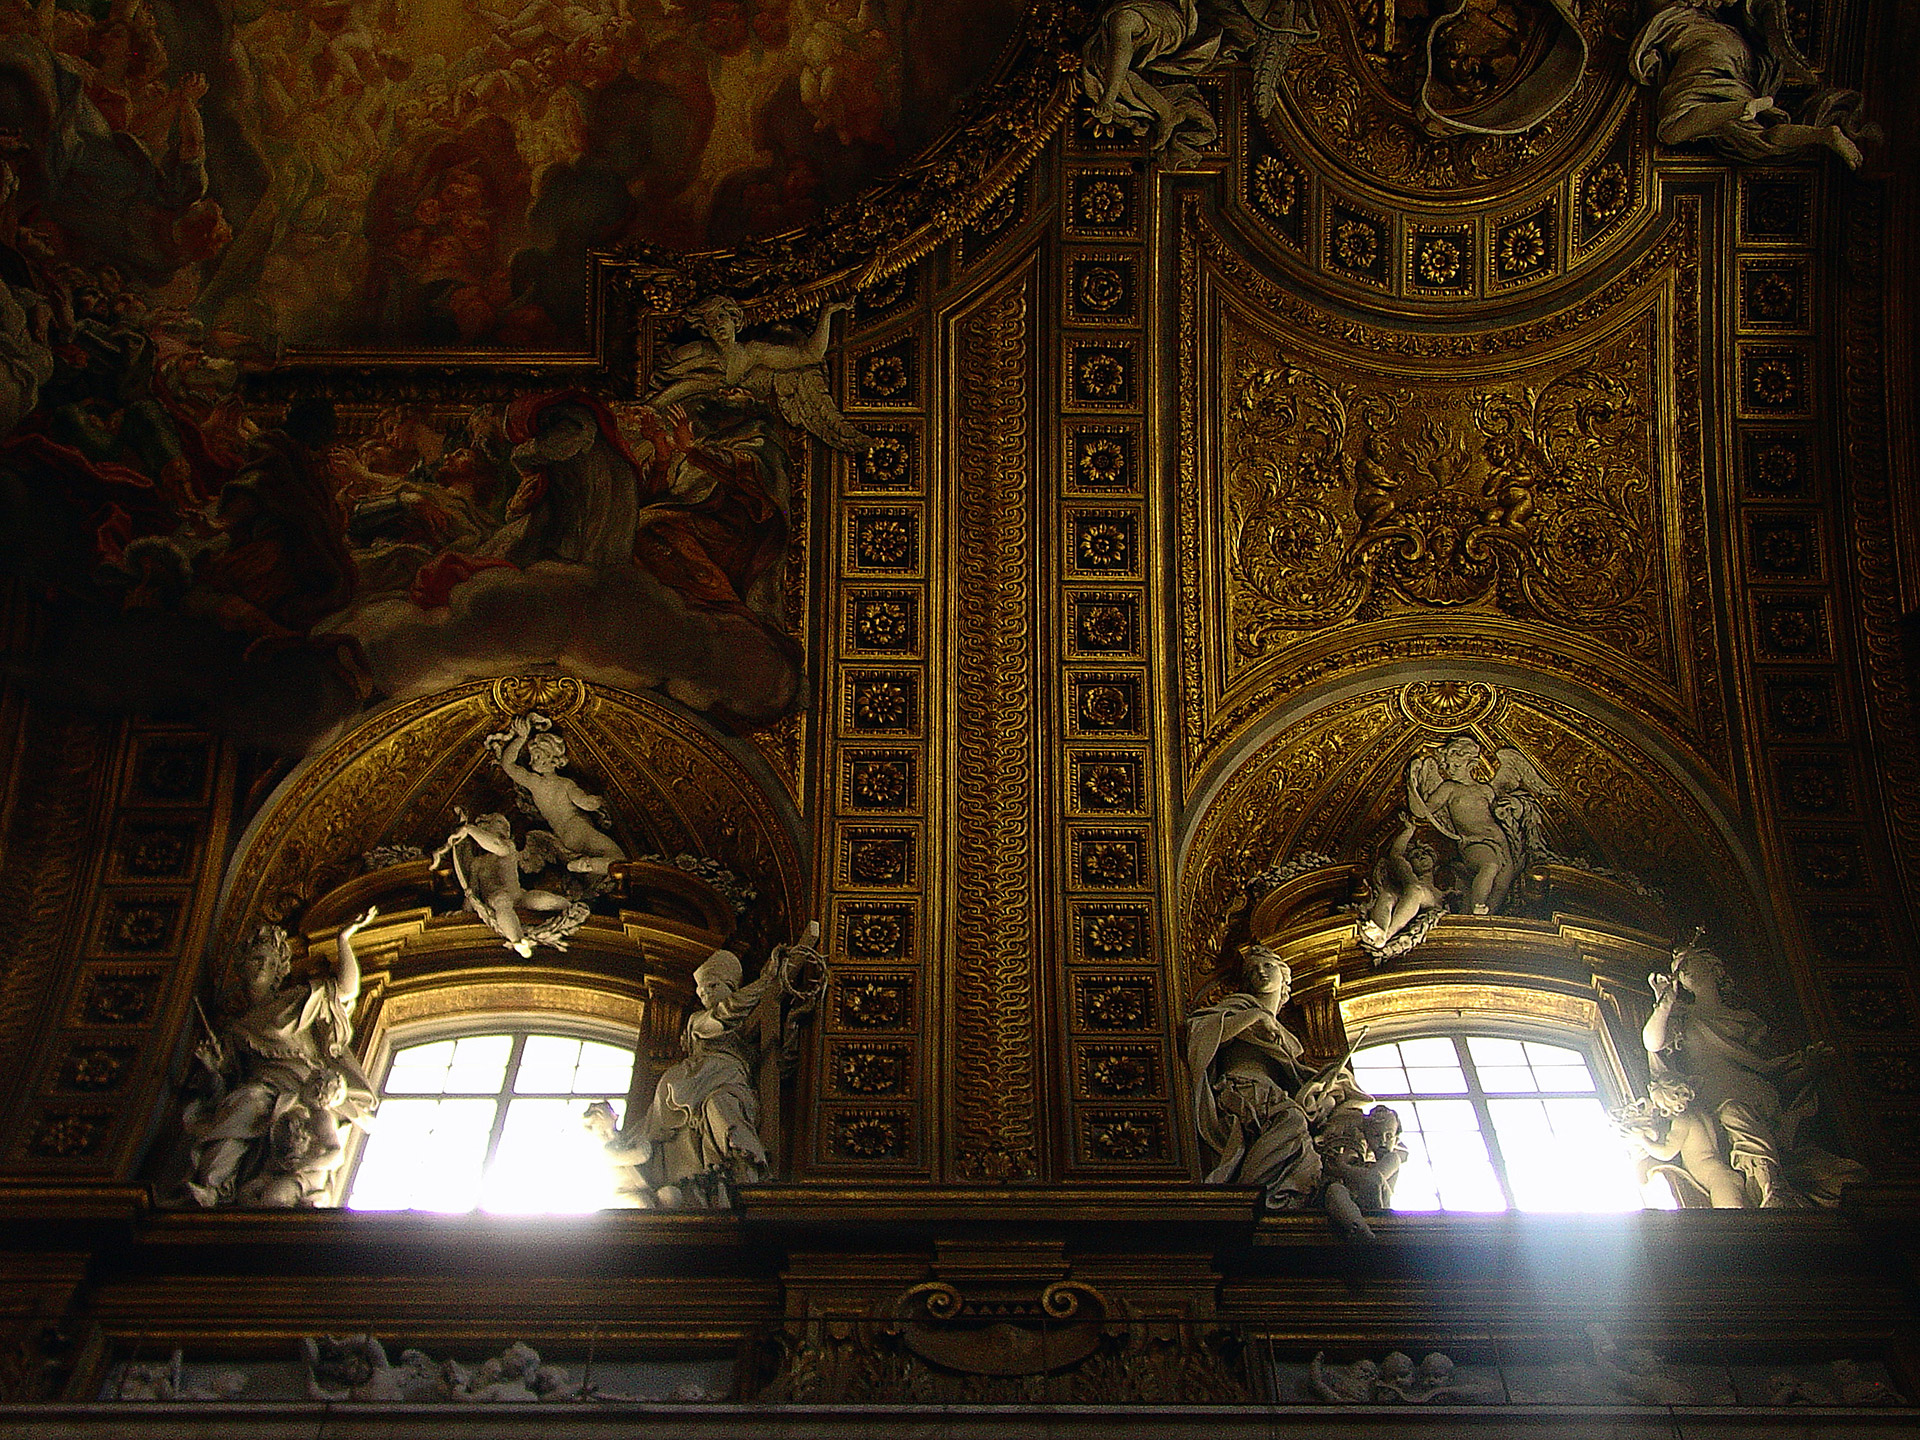 Rzym, kościół Il Gesu, barok, sklepienie, Włochy, podróże, podróże po Europie, fotografia Monika Turska